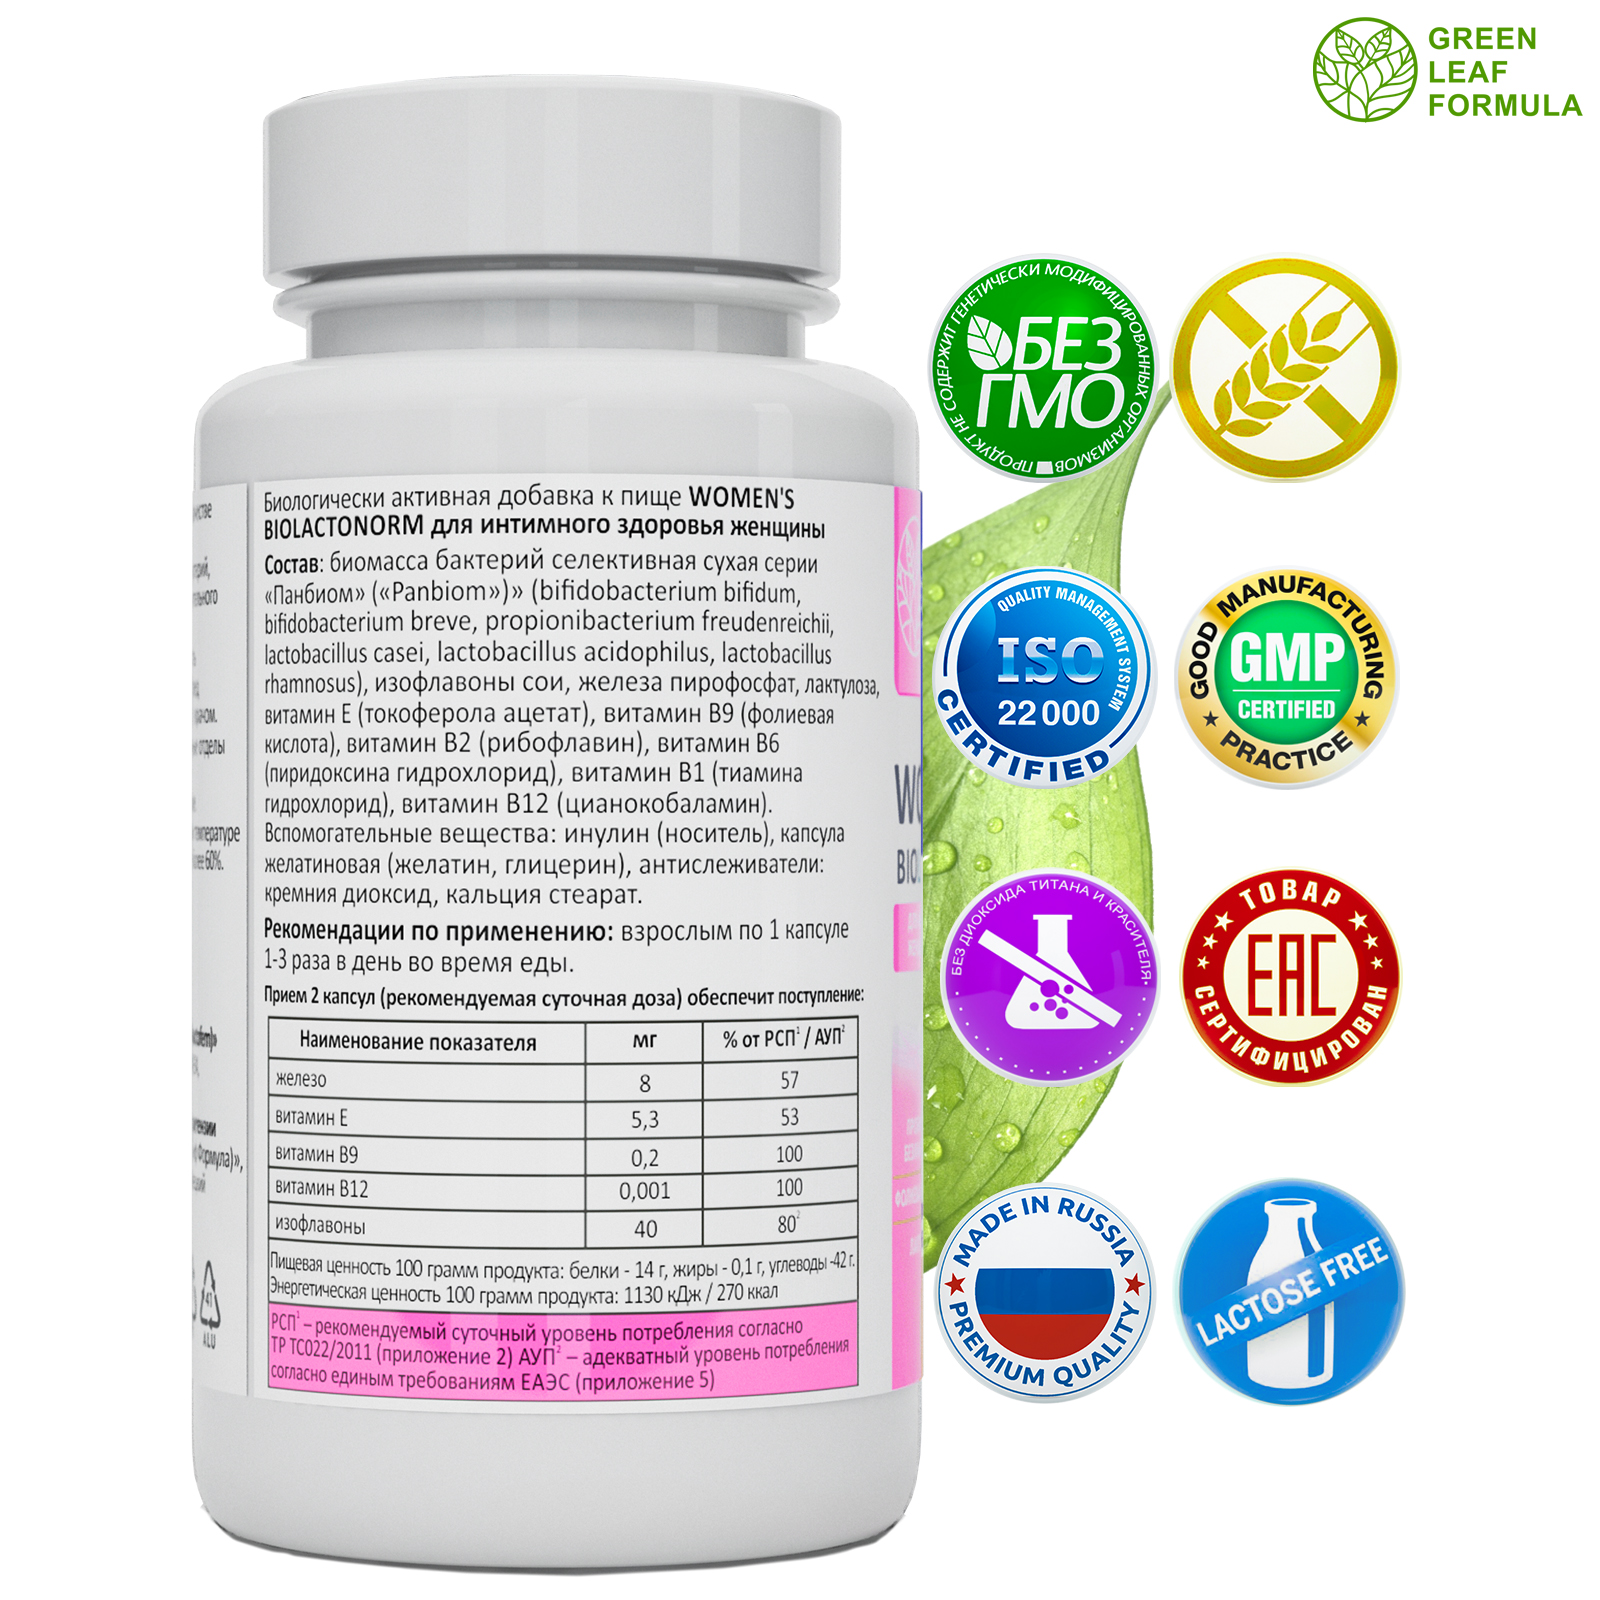 Пробиотик для женщин Green Leaf Formula фитоэстрогены витамин Д3 600 МЕ масло МСТ для энергии - фото 3